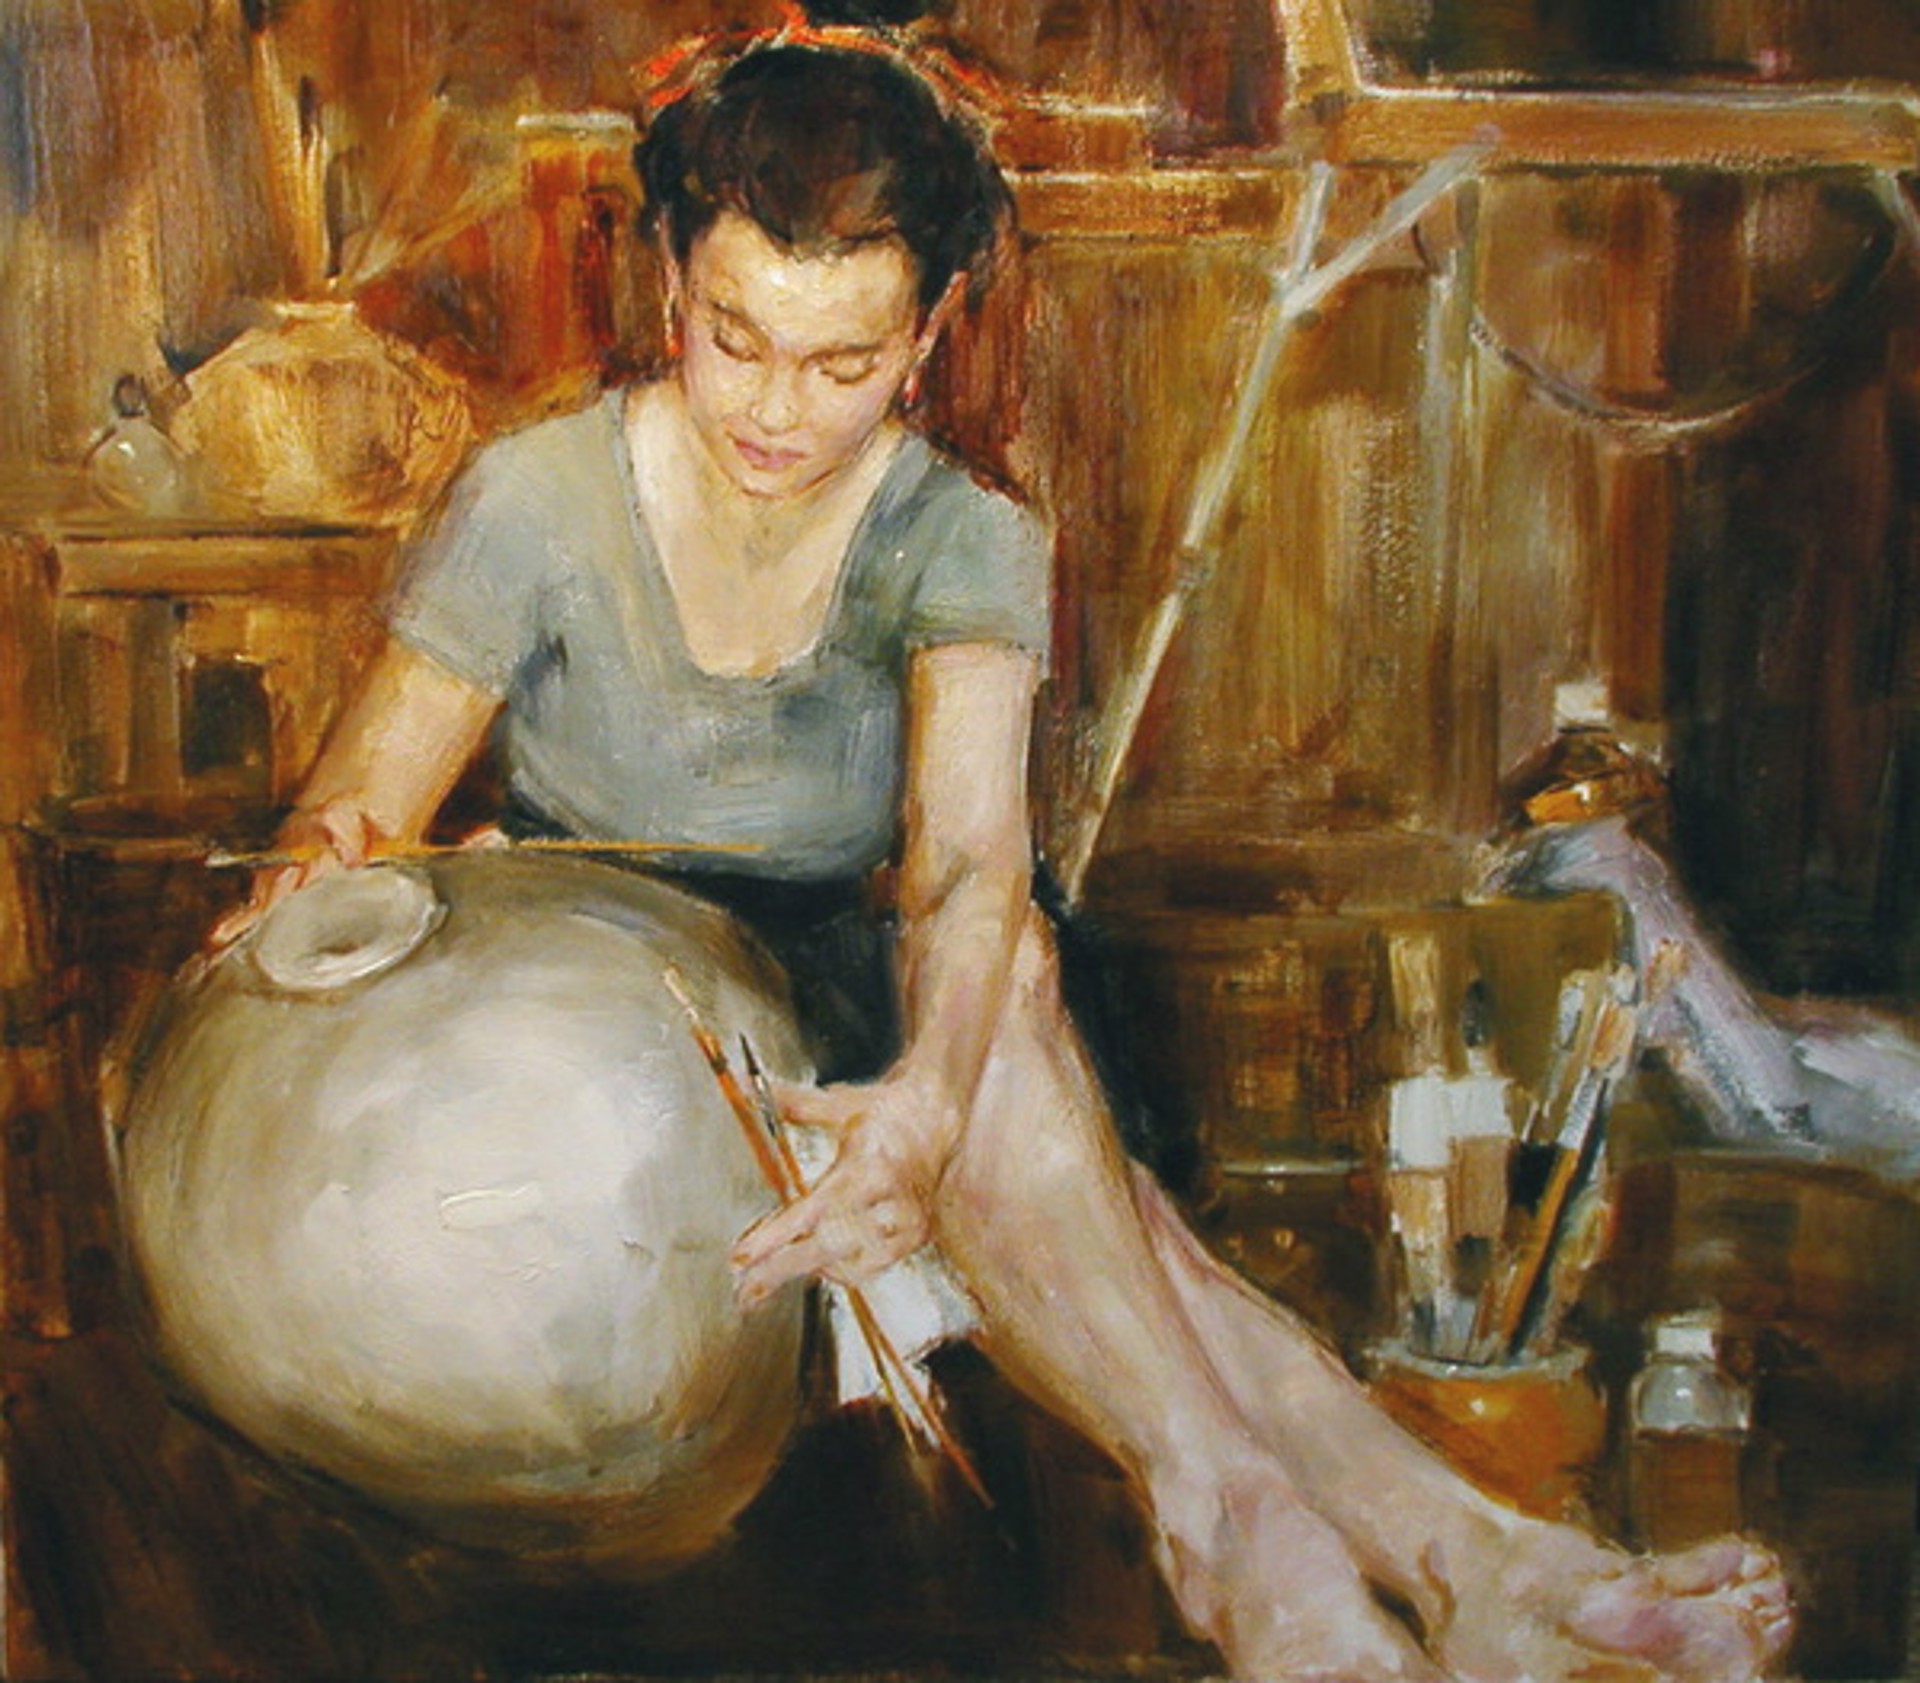 Woman Painting Ceramics by Yana Golubyatnikova